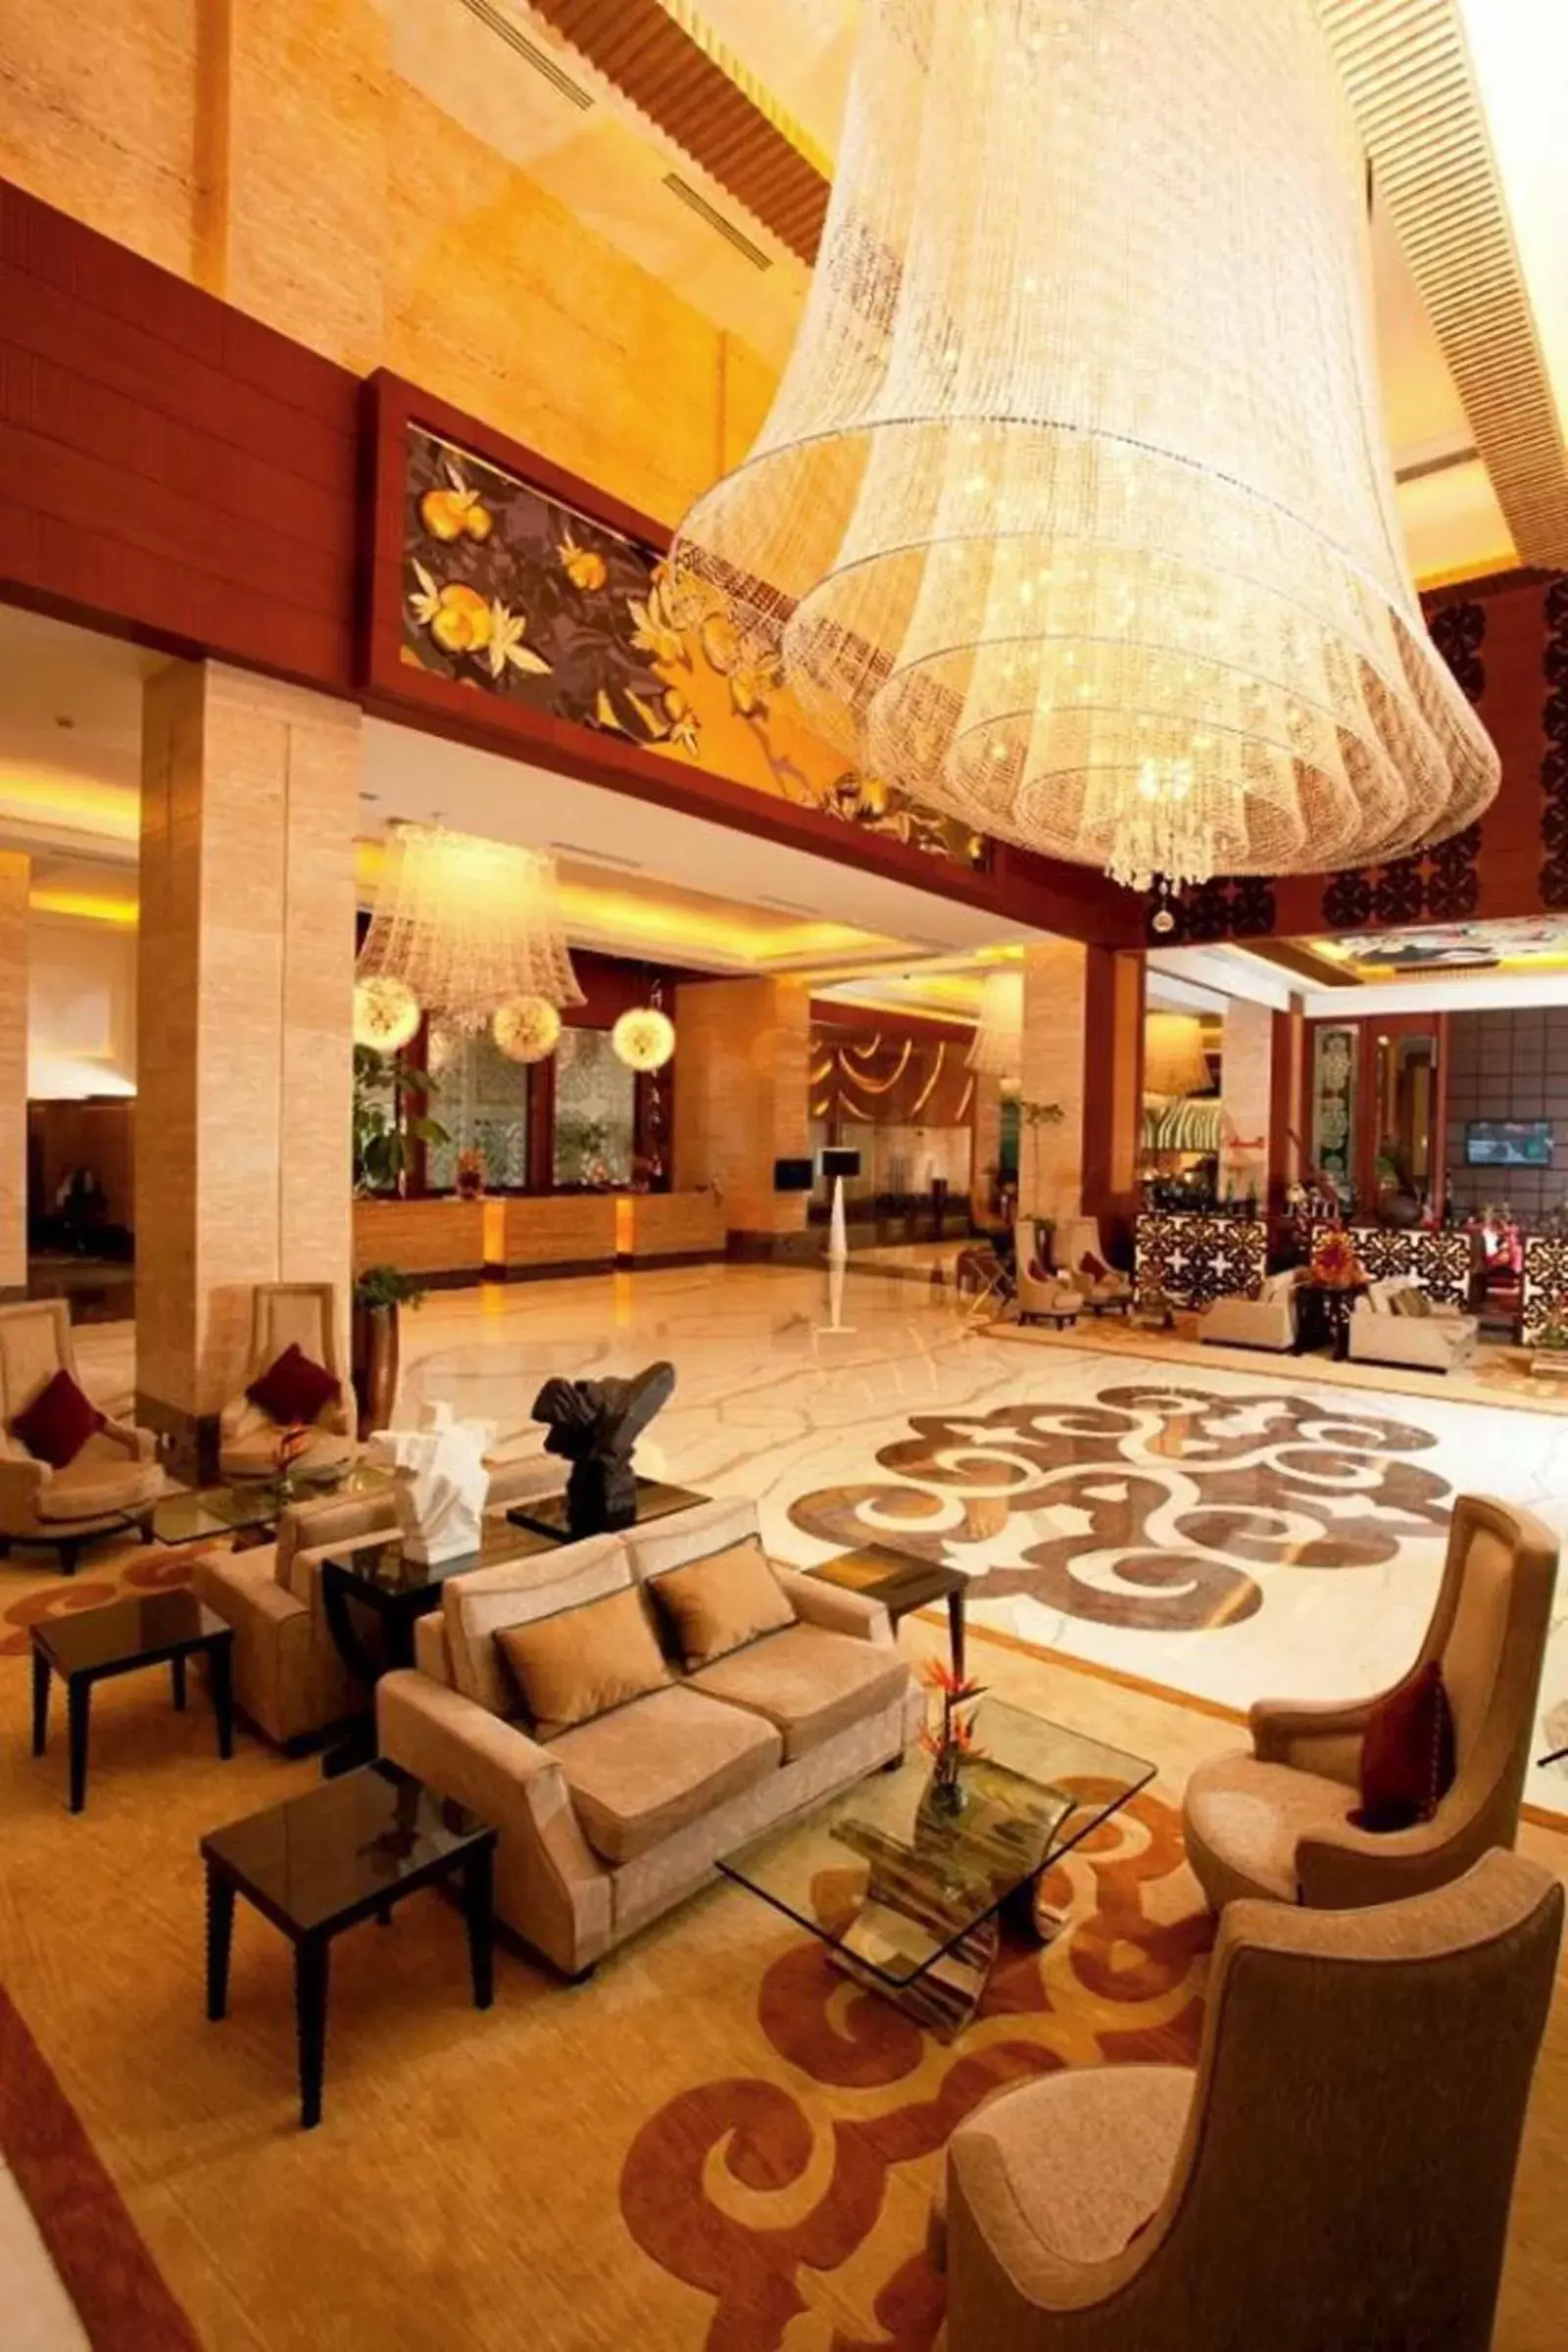 Lobby or reception in Radisson Blu Hotel, Nagpur